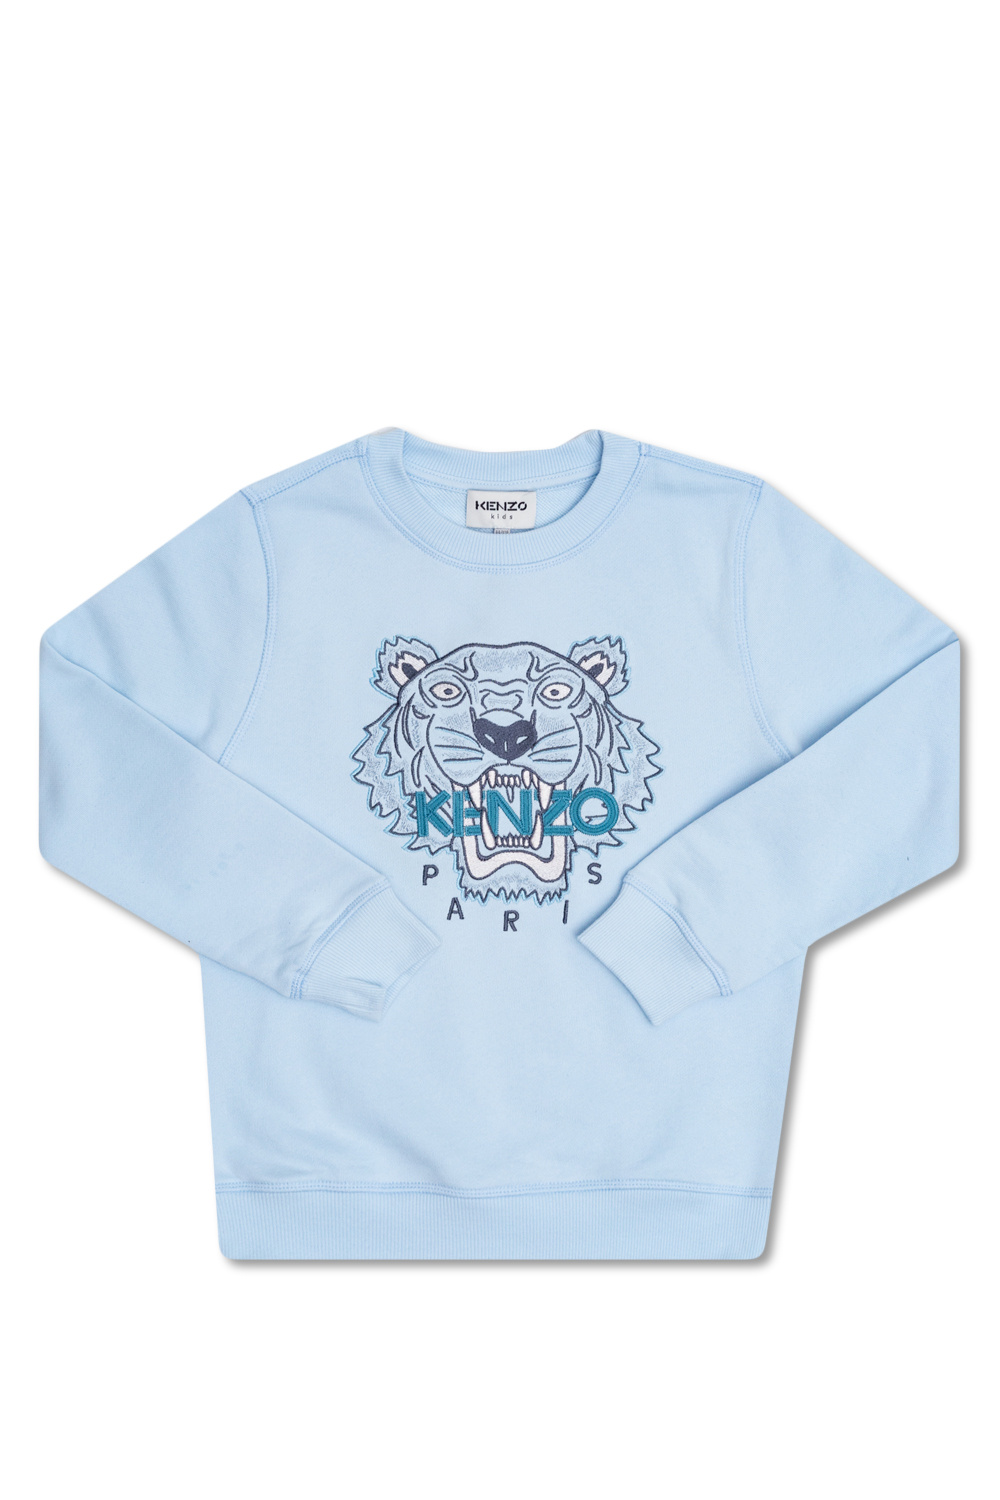 Kenzo Kids drawstring sweatshirt with tiger motif